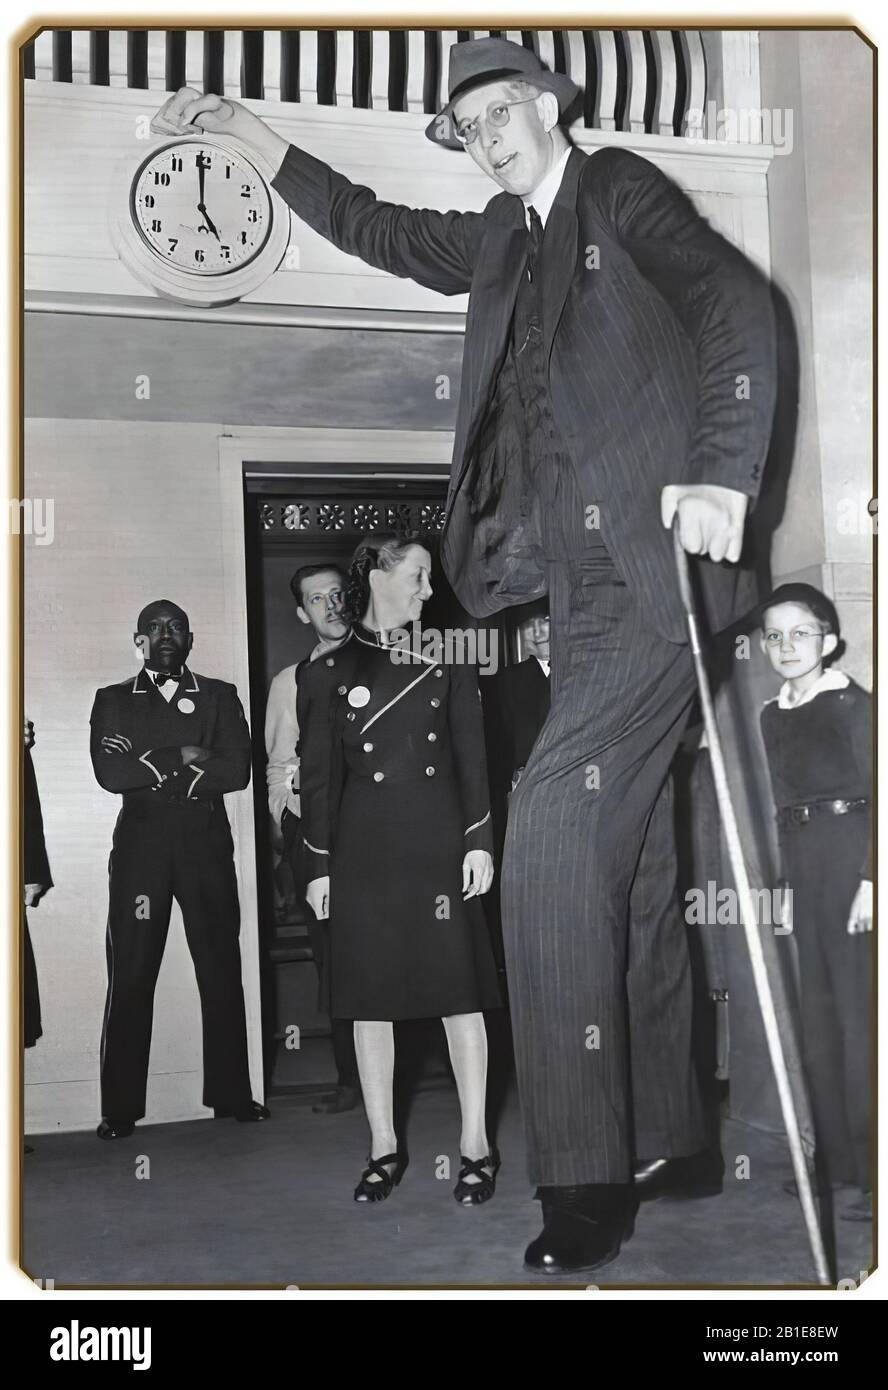 Robert Wadlow, 'il Gigante dell'Illinois.' Dopo aver raggiunto un'altezza di 8 piedi 11 in, Wadlow è la persona confermata più alta mai vissuta Foto Stock